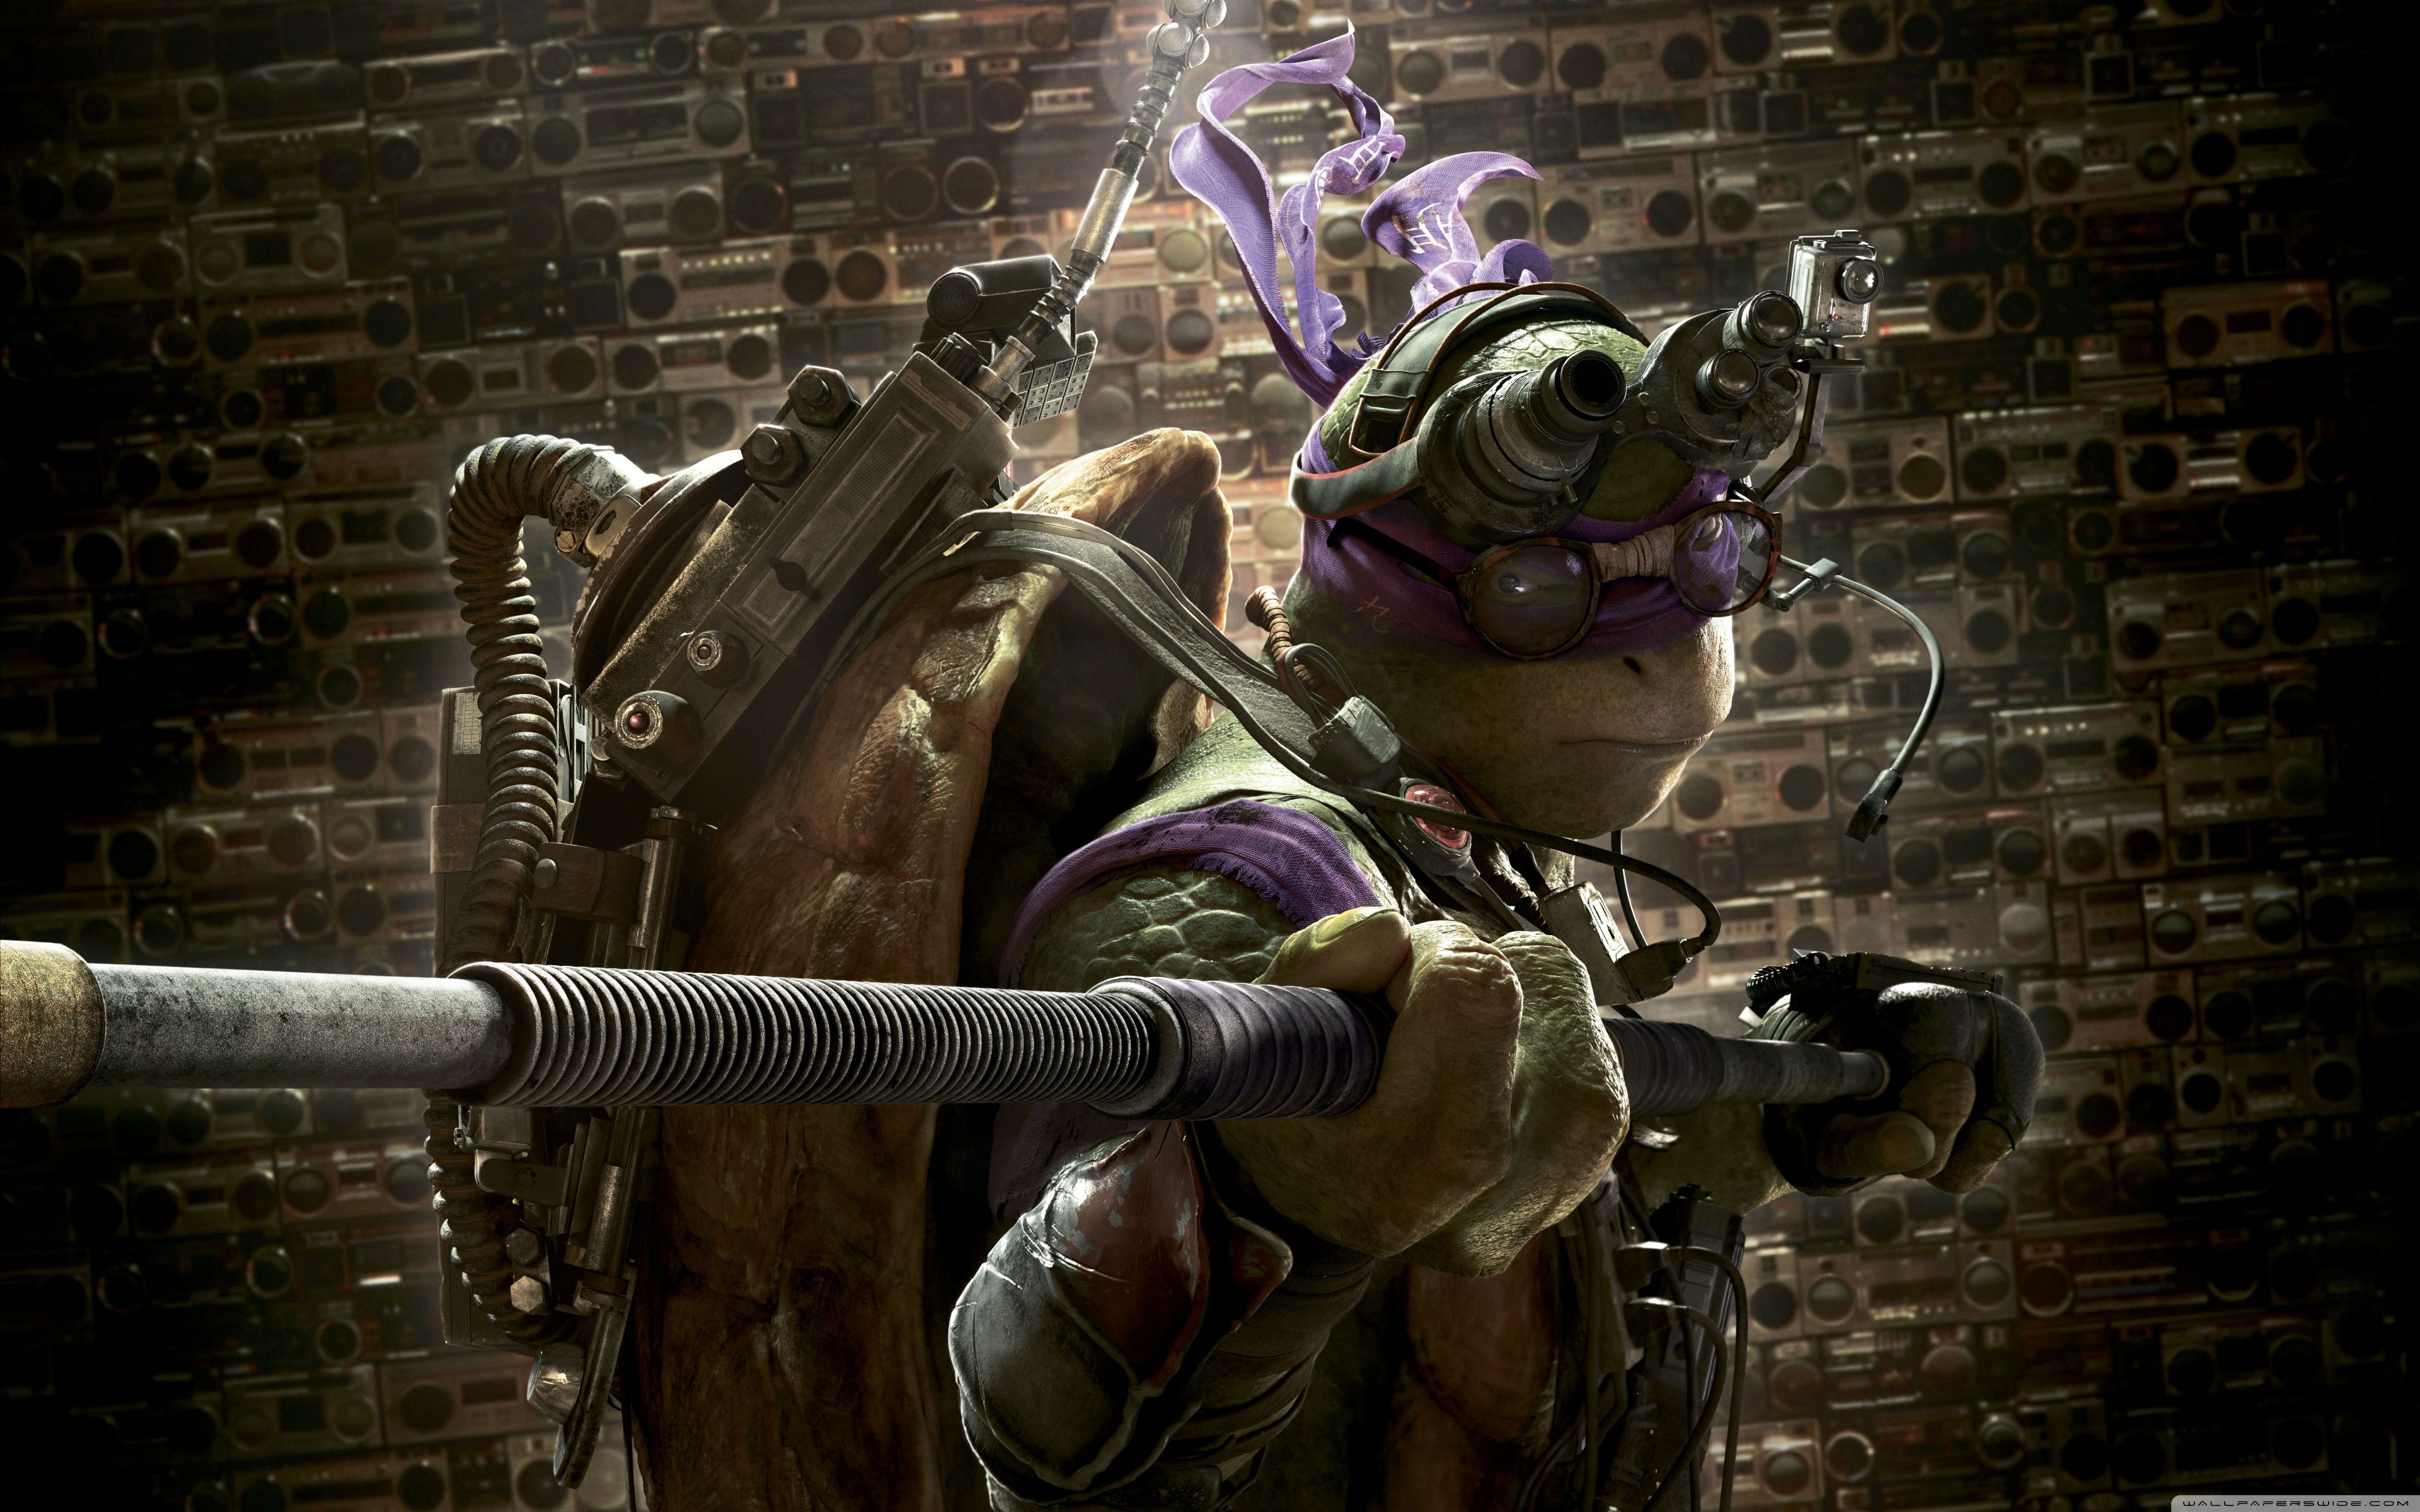 wallpaper do Donatello!  Tmnt, Donatello ninja turtle, Donatello